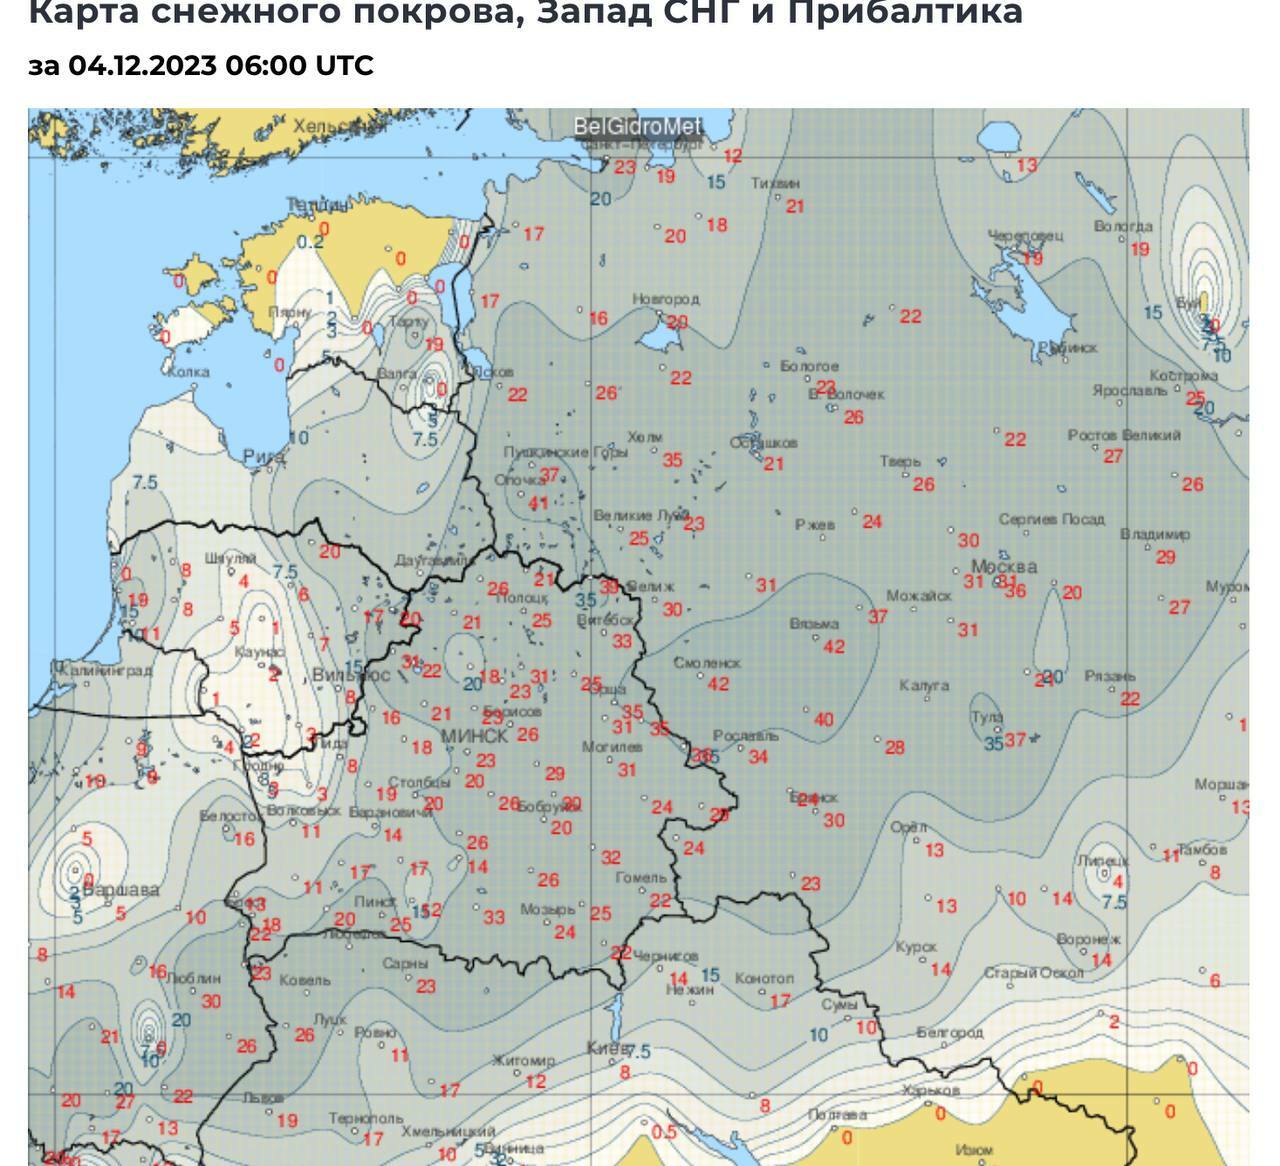 Синоптики спрогнозировали “прилично холодный” декабрь в Беларуси. Где снега выпадет на 50% больше обычного?